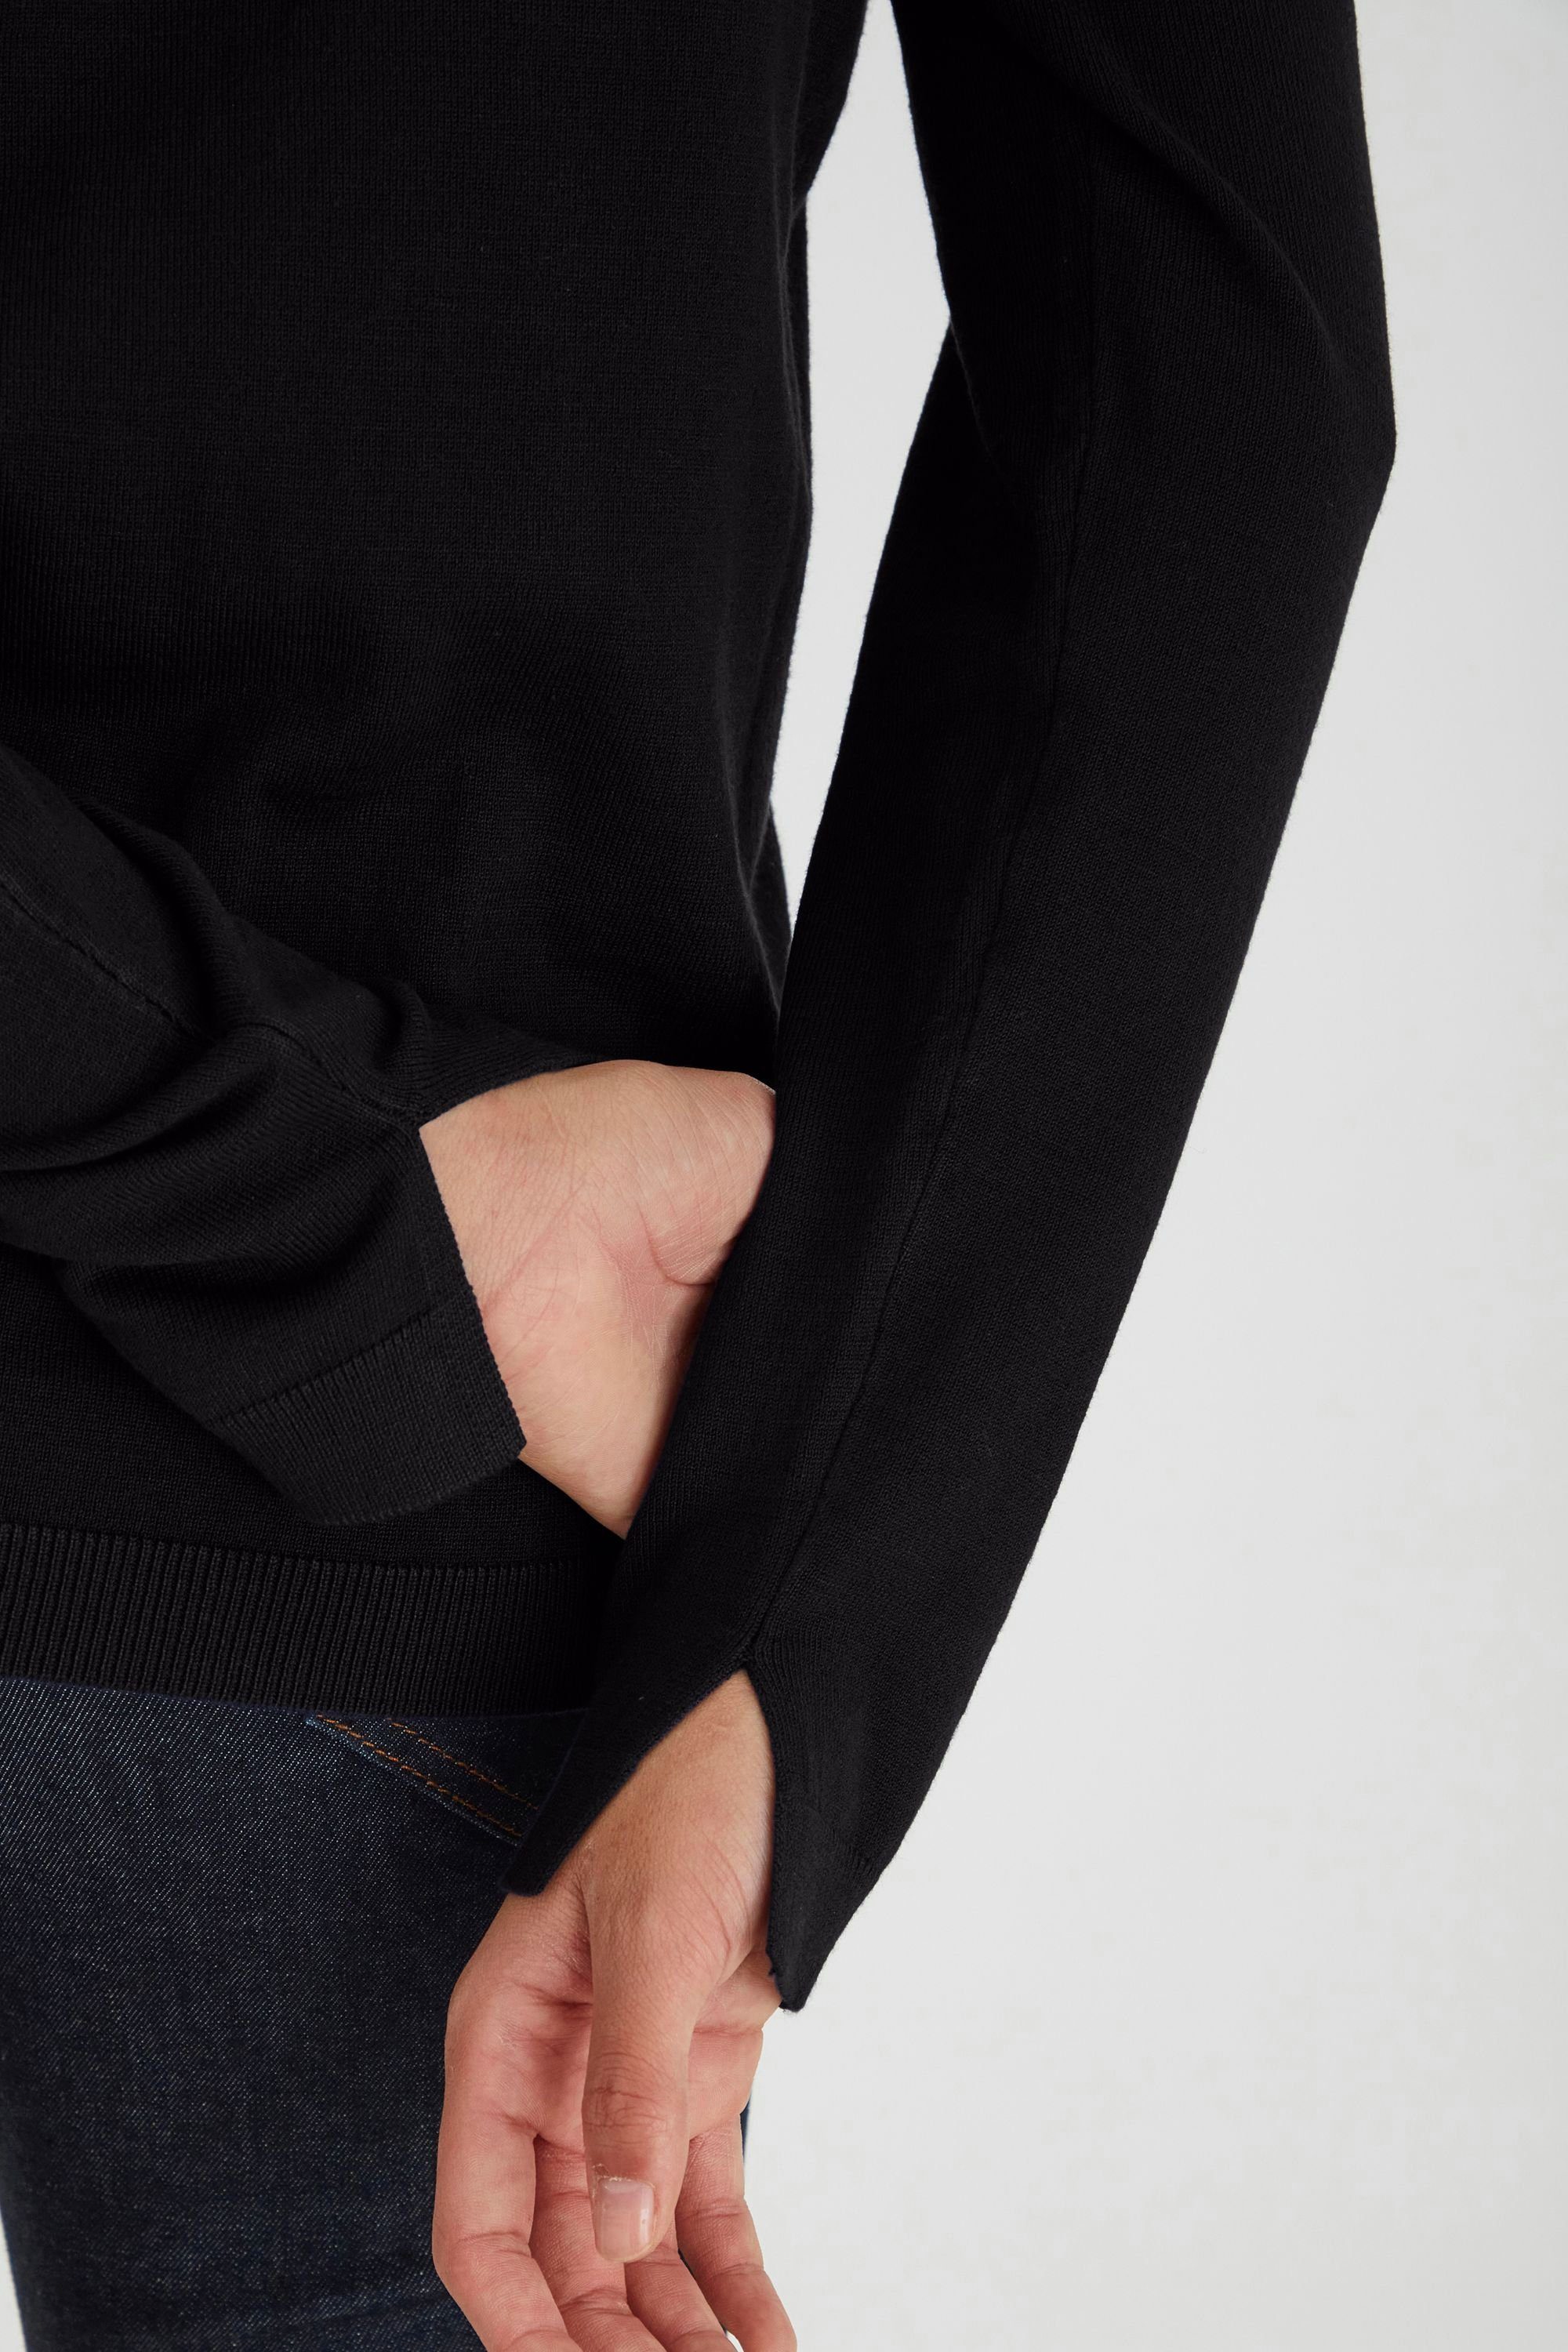 - (5000199) PZSARA Femininer Strickpullover Jeans Black mit V-Ausschnitt 50204127 Pulz Pullover